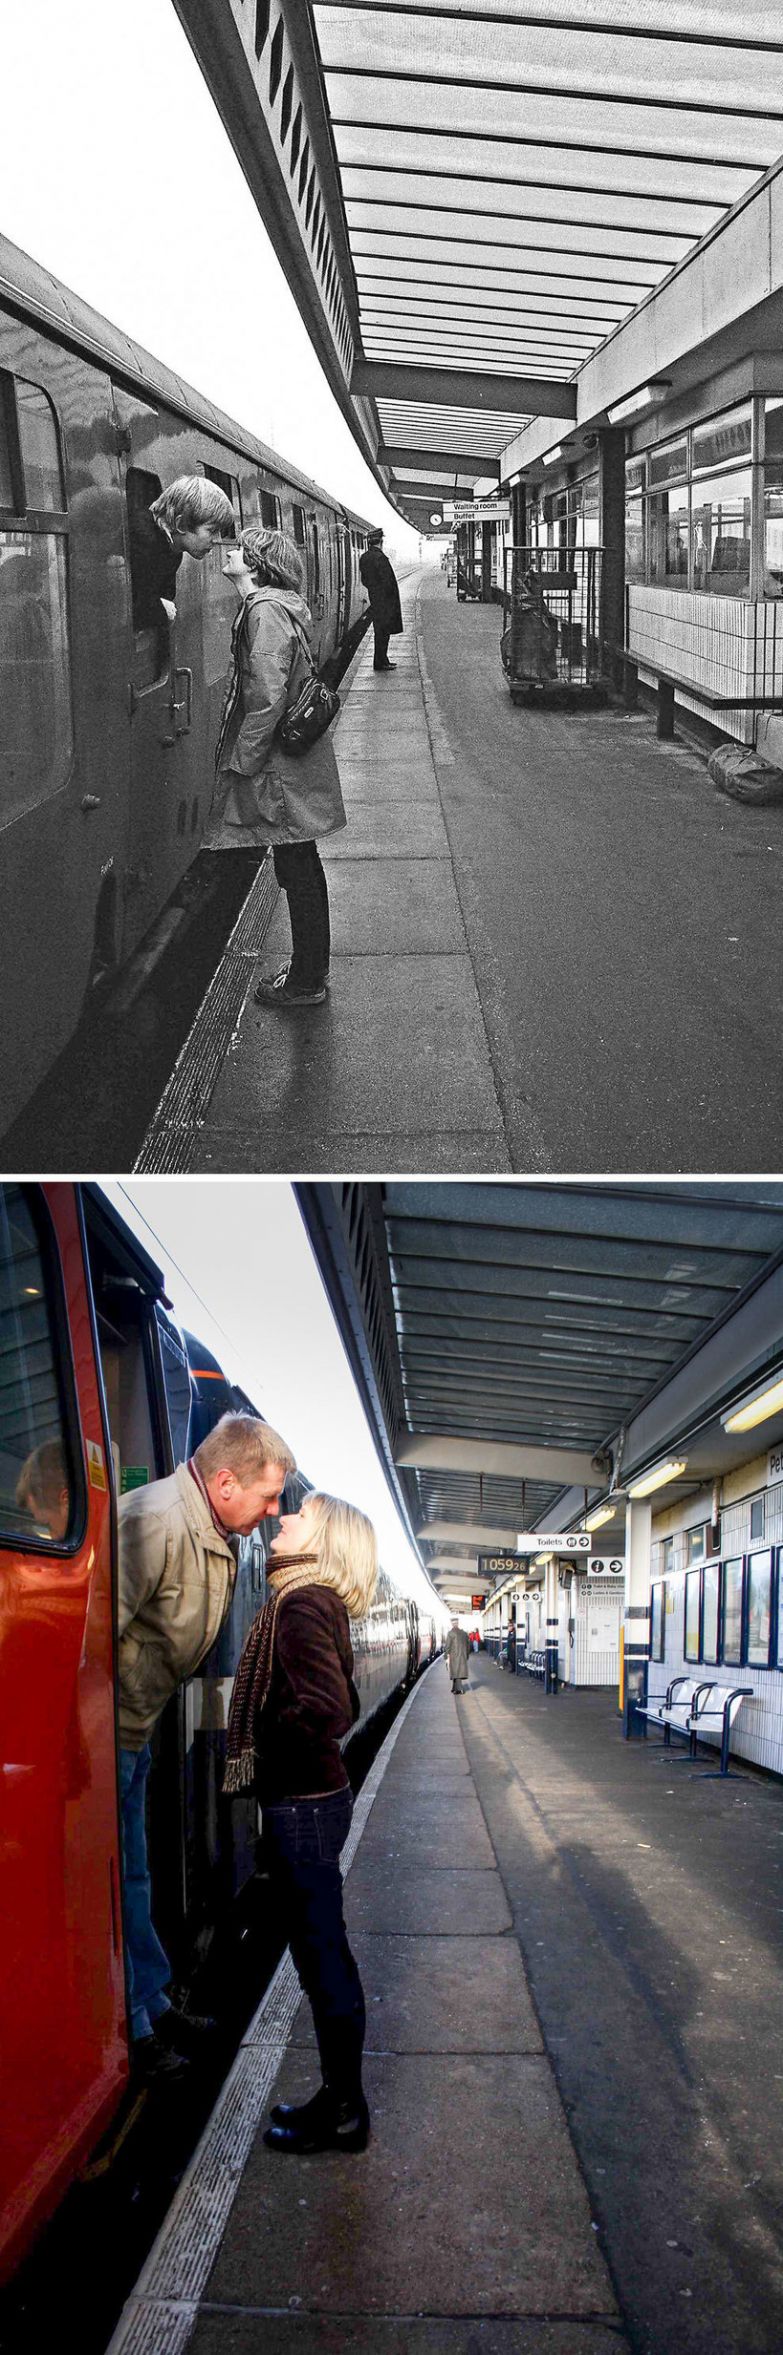 Фотограф разыскал незнакомцев и воссоздал старые снимки, которым почти 40 лет